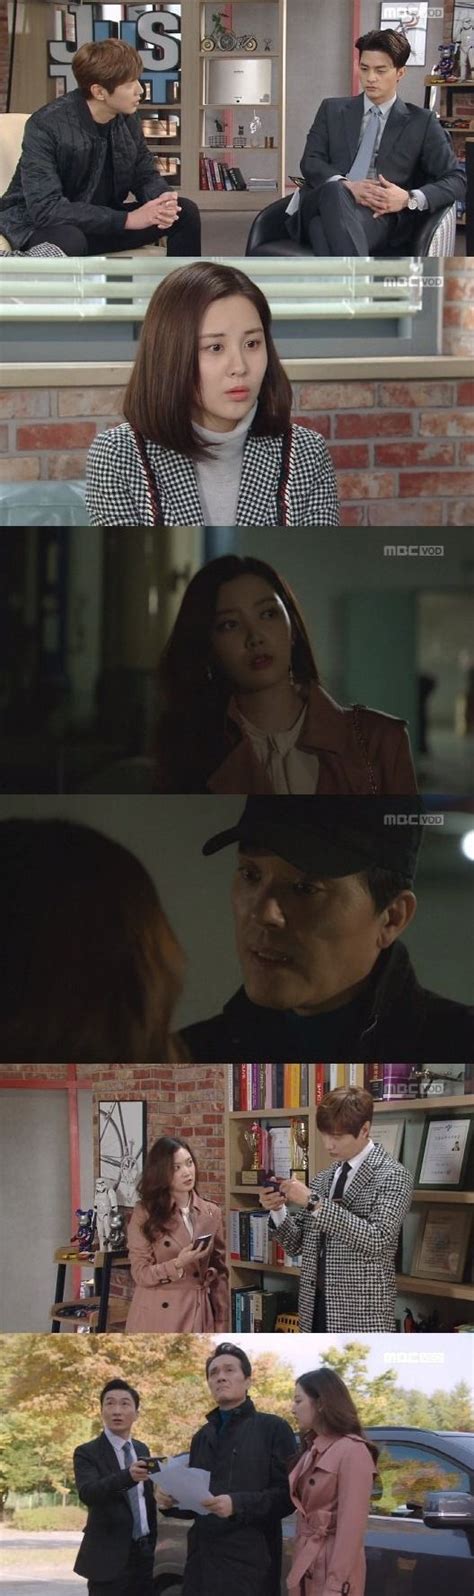 Bad thief, good thief : Bad Thief, Good Thief (도둑놈, 도둑님) Korean - Drama - Episode ...